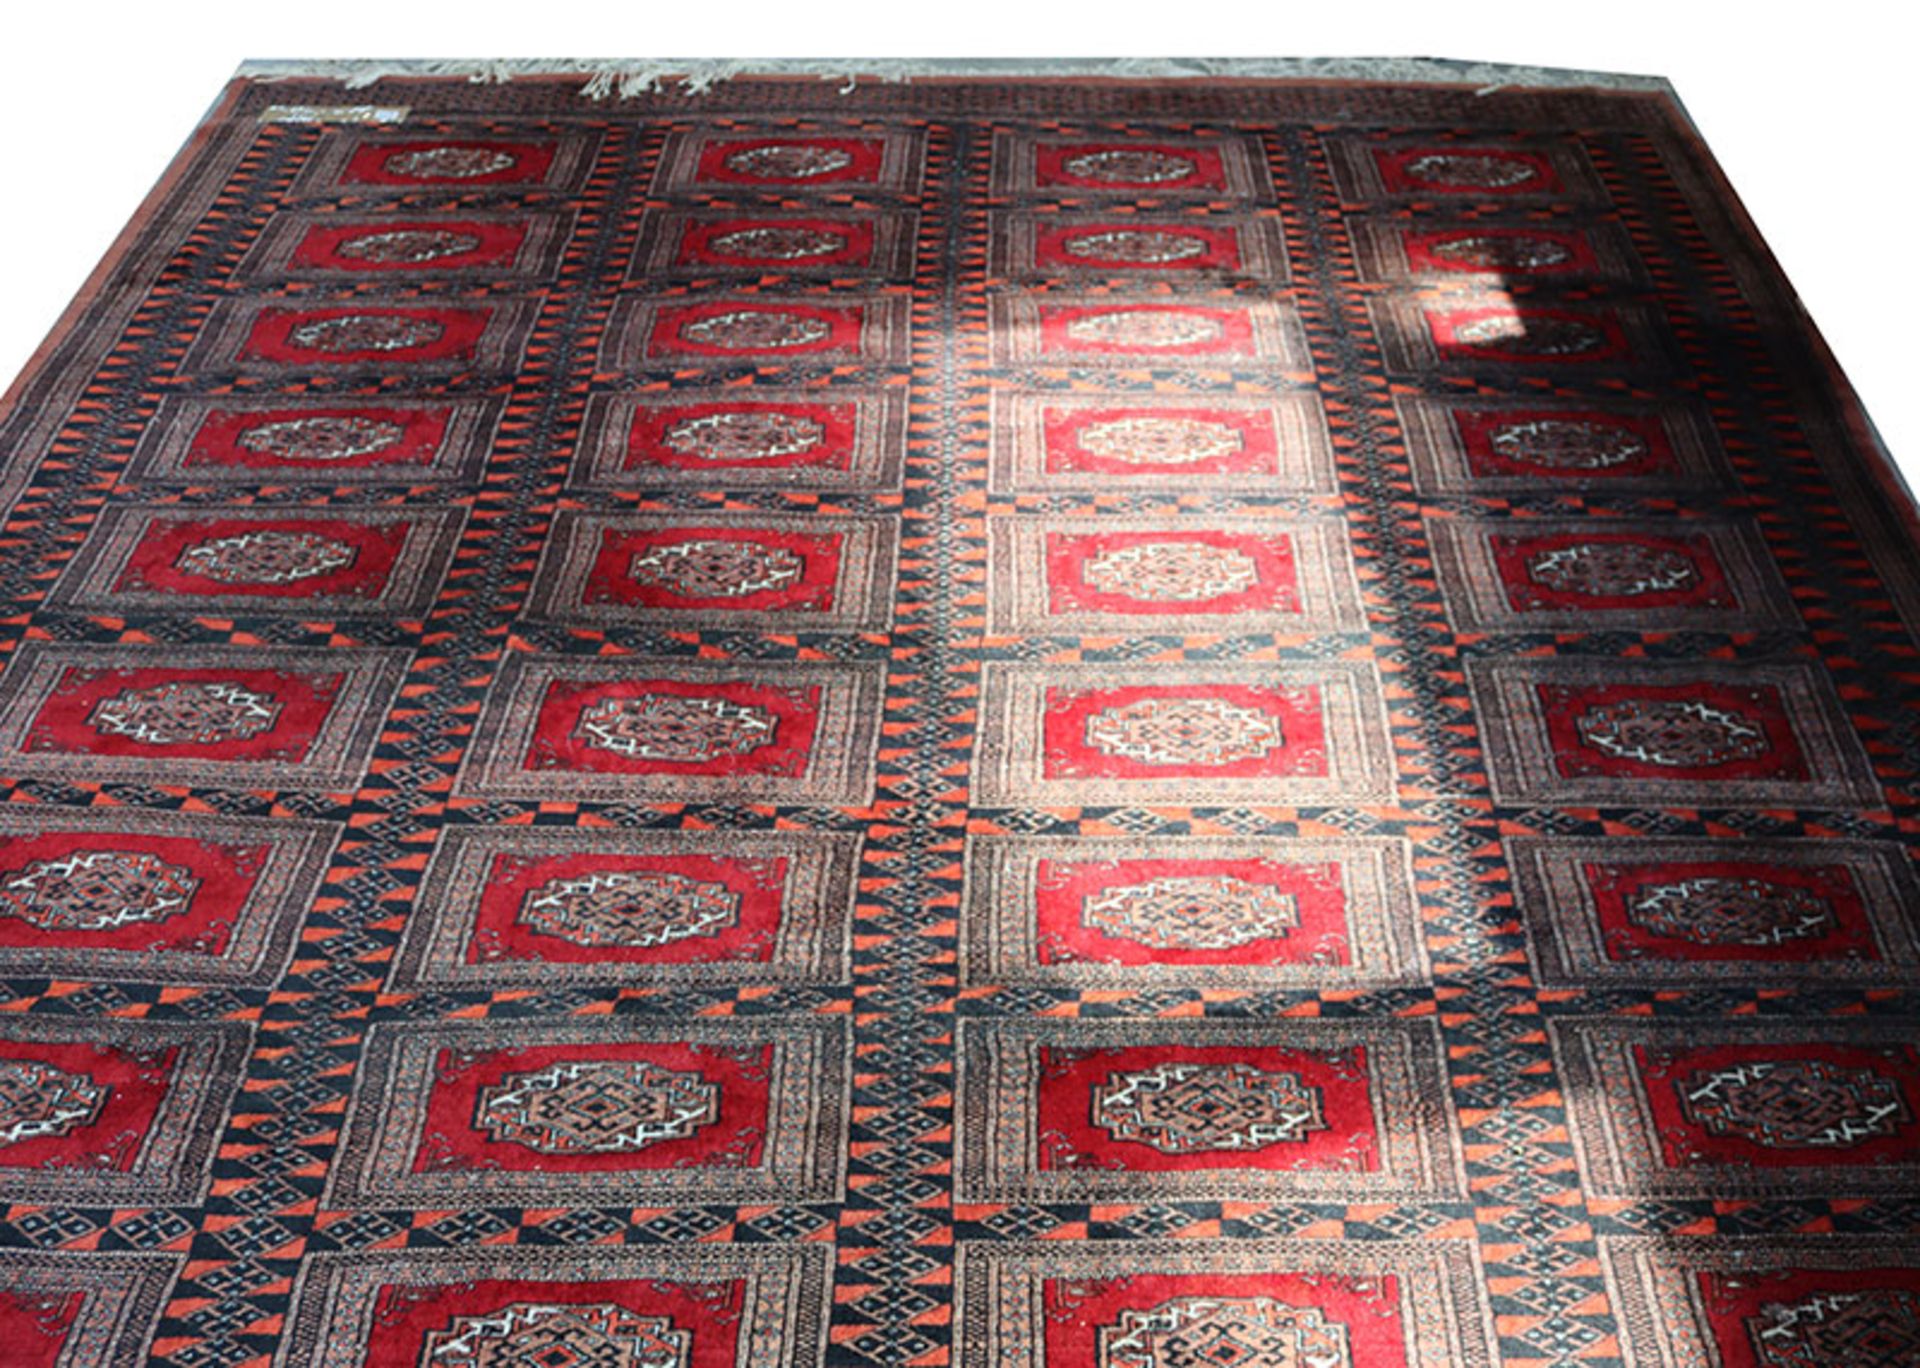 Teppich, Pakistan-Buchara, , rot/schwarz, Gebrauchsspuren, 330 cm x 257 cm